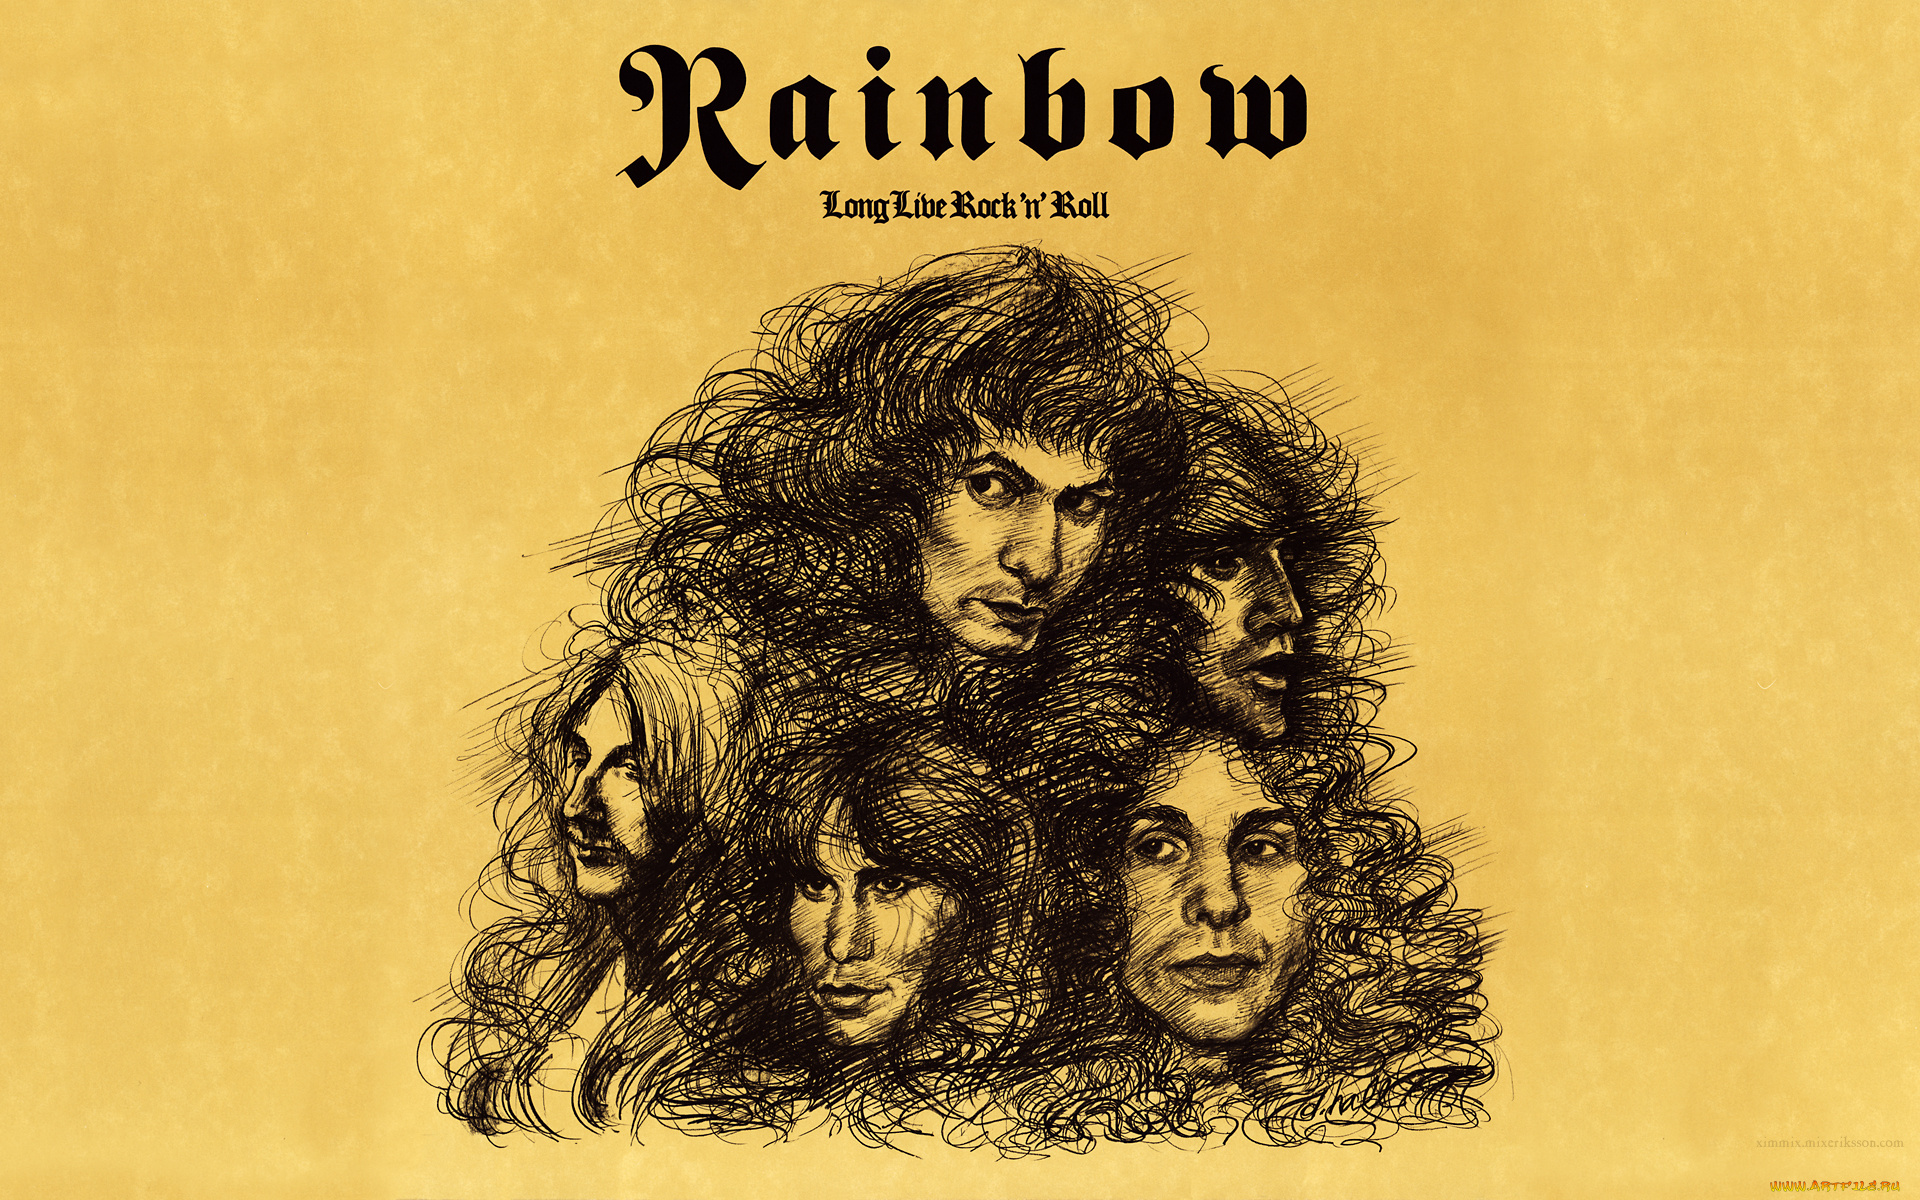 rainbow, музыка, британско-американская, группа, хард-рок, хэви-металл